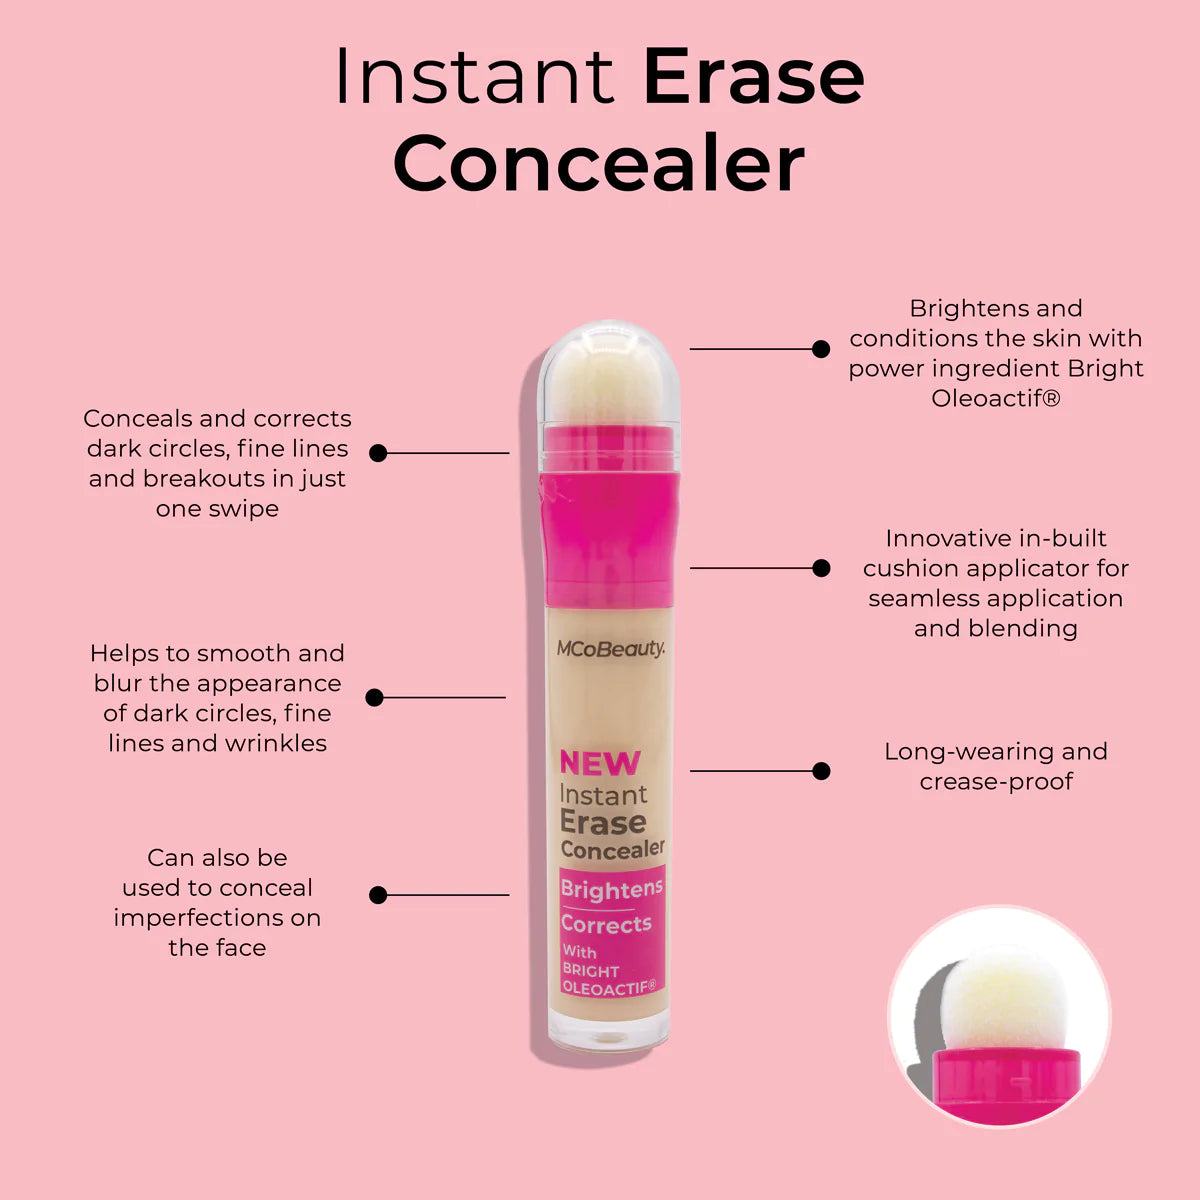 Instant Erase Concealer